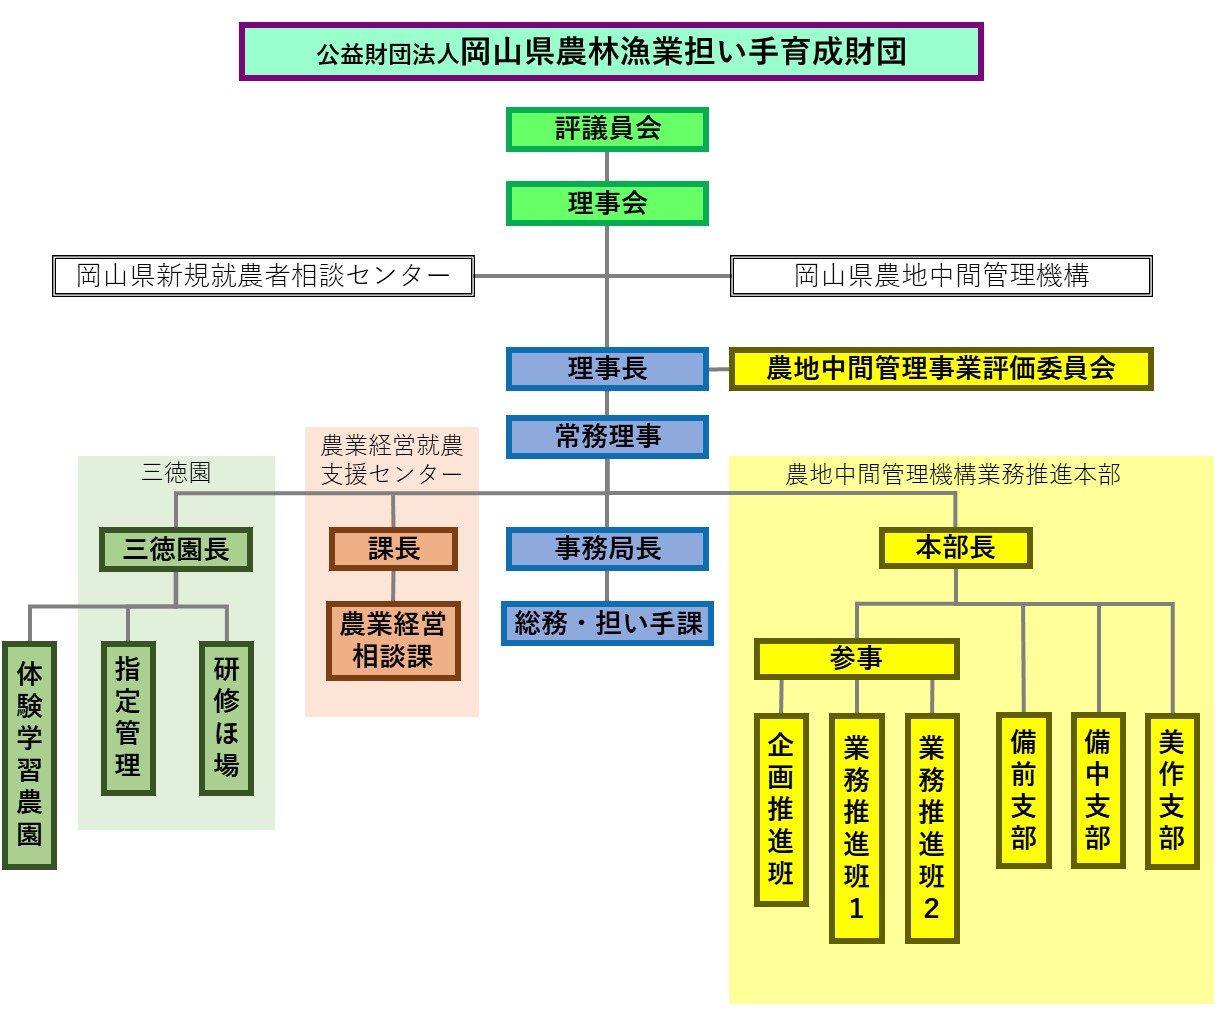 岡山県農林漁業担い手育成財団業務体制組織図